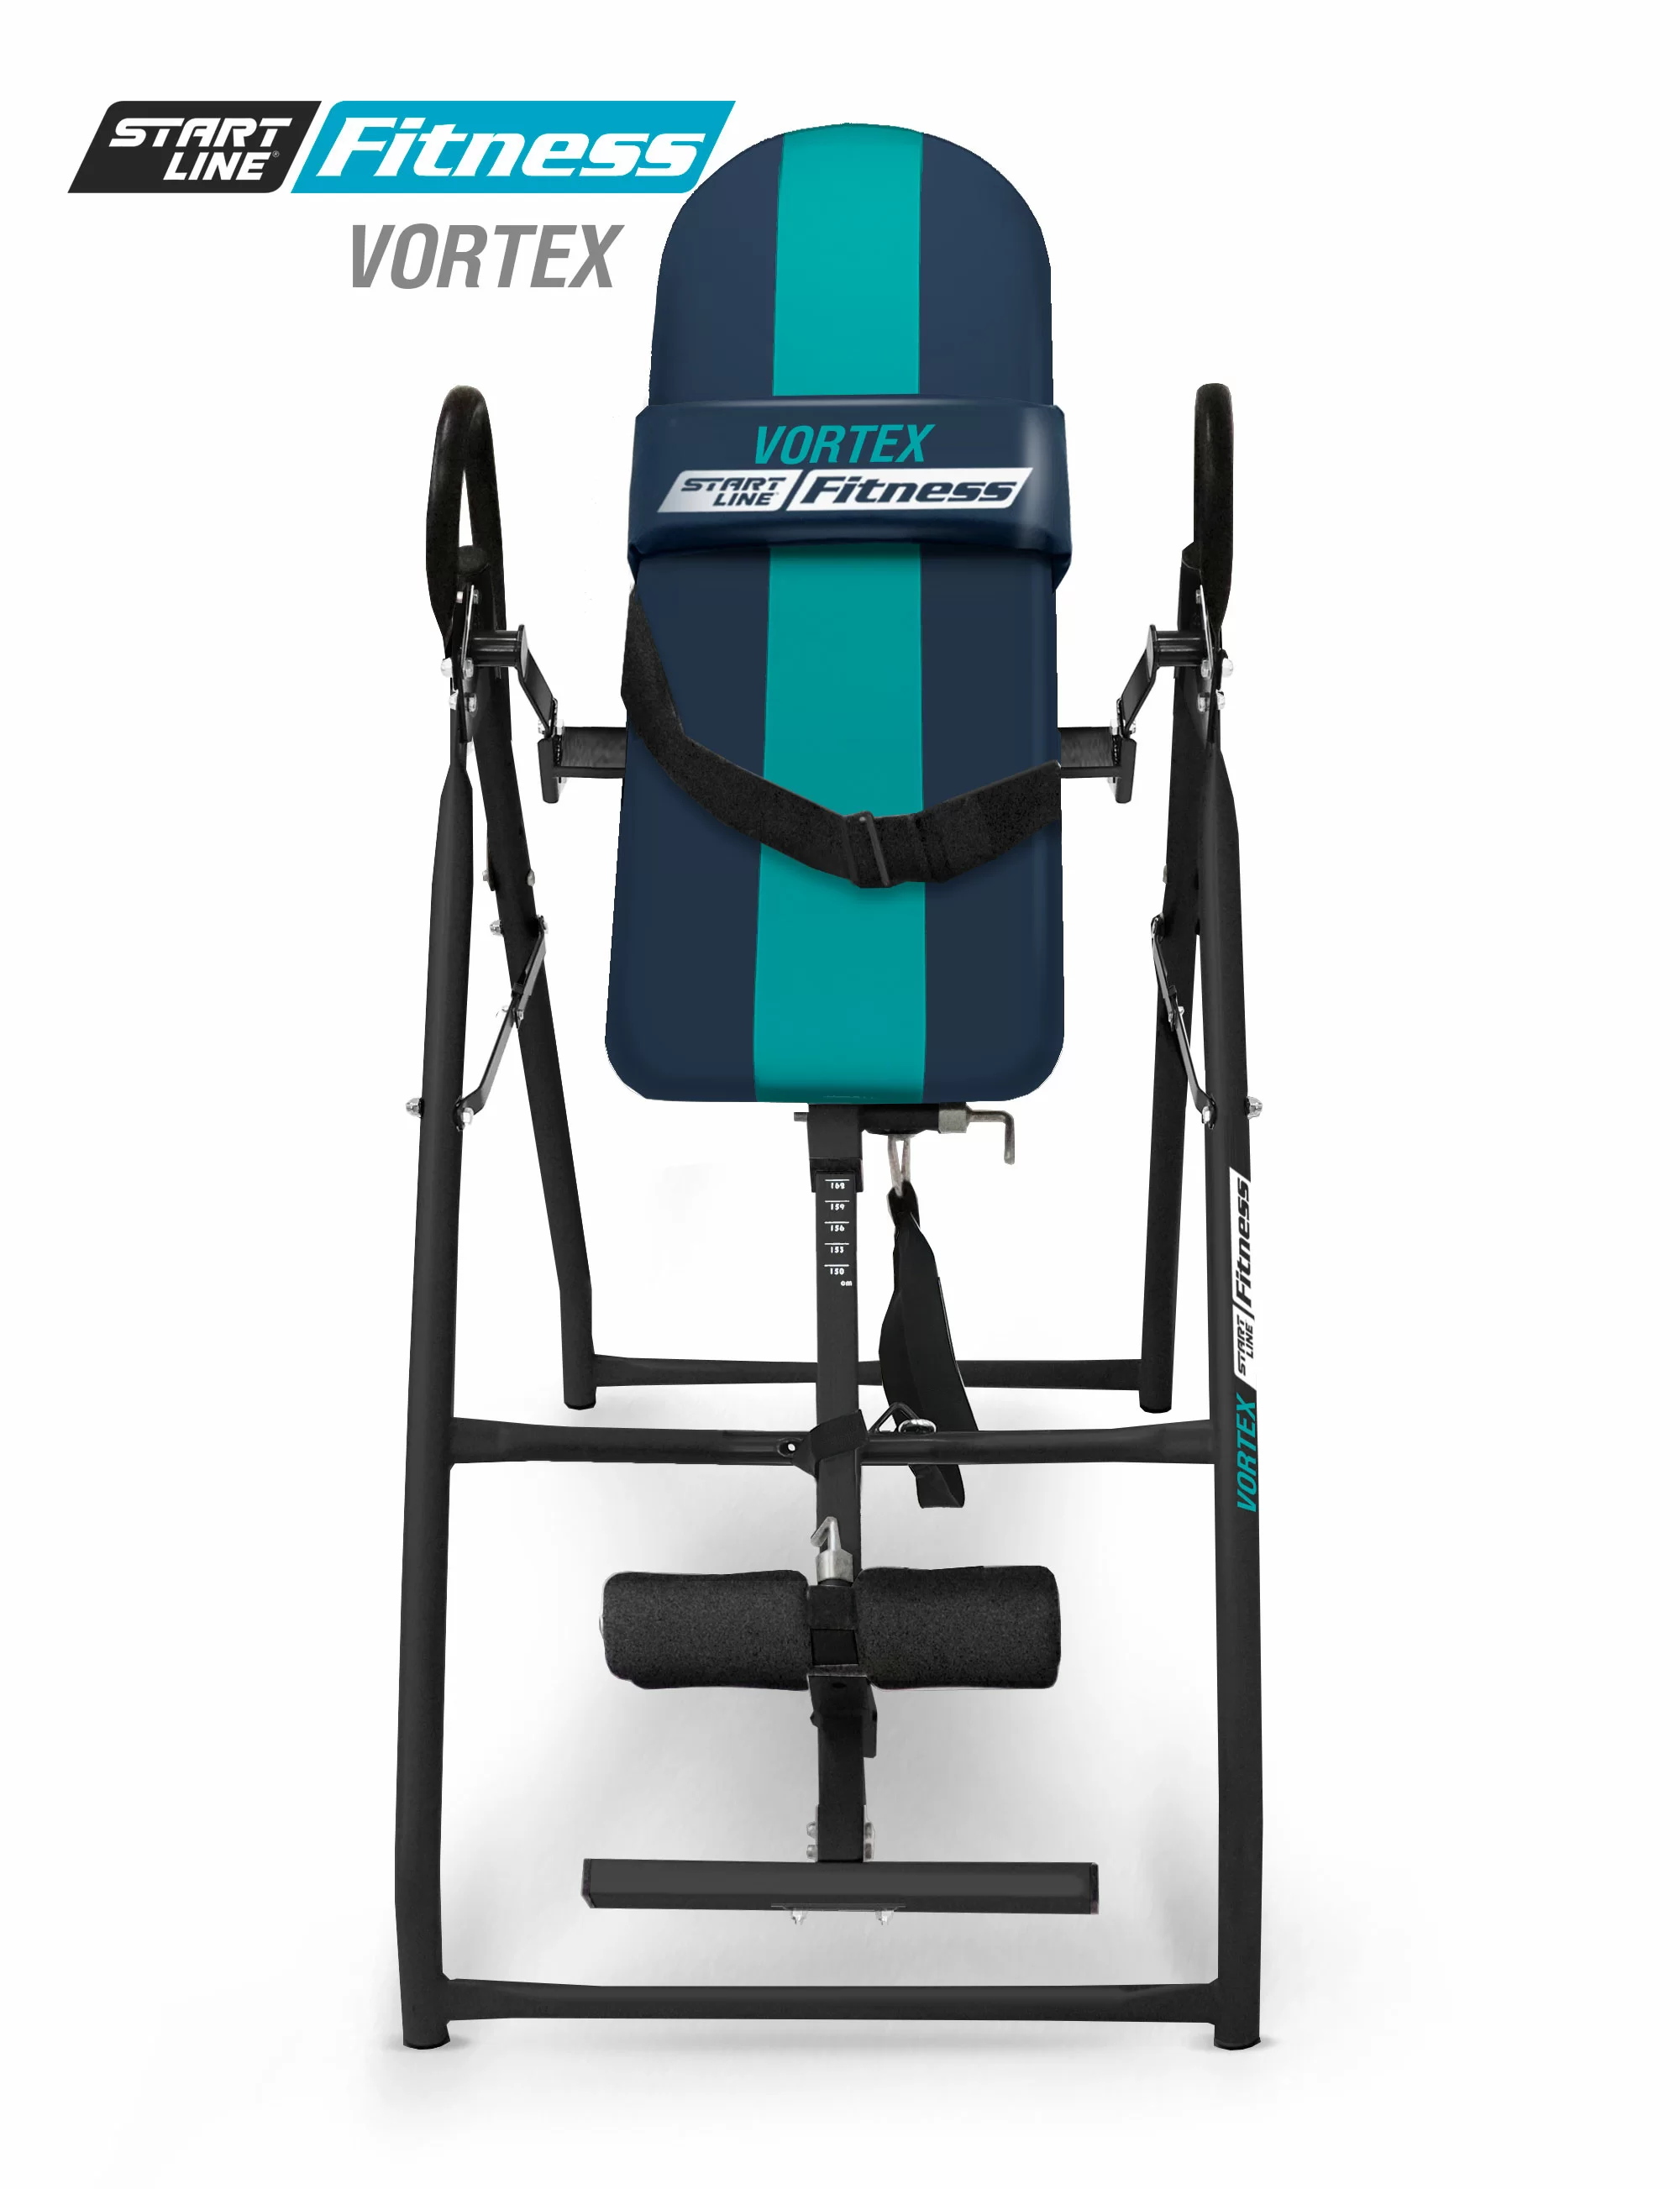 Фото Инверсионный стол Vortex сине-бирюзовый с подушкой со склада магазина СпортСЕ